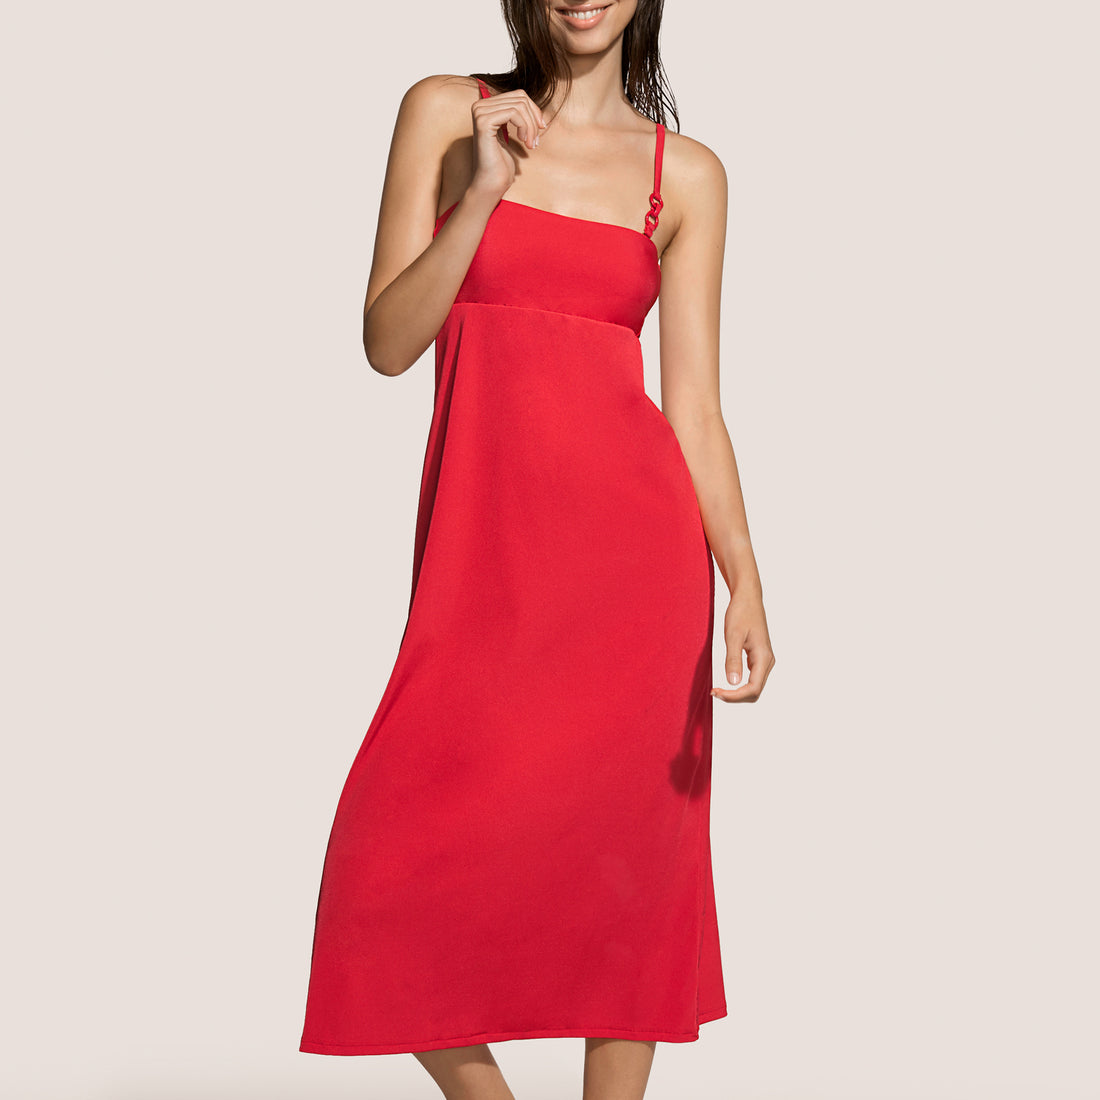 Andres Sarda Swimwear Gray Swimwear Dress Long (3411470) Red